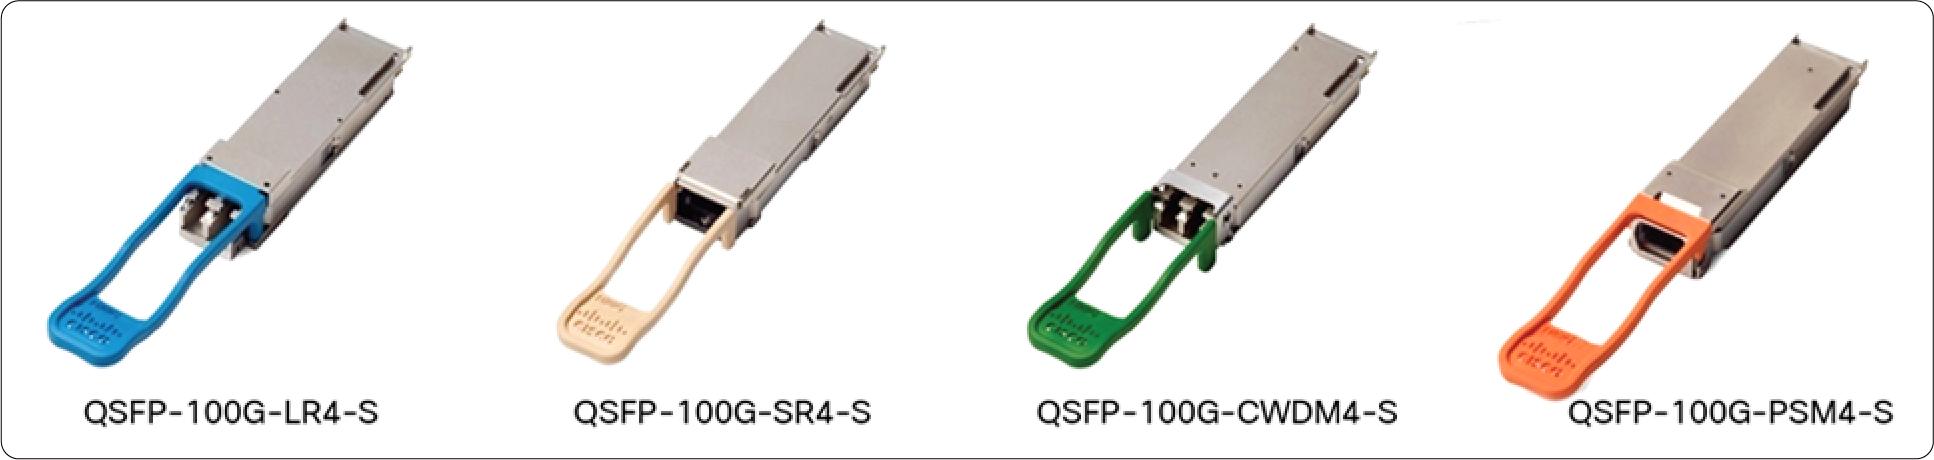 QSFP-100G-CU2.5M Cisco 100 Gigabit Modules - Cisco 100GBASE QSFP Modules - 2